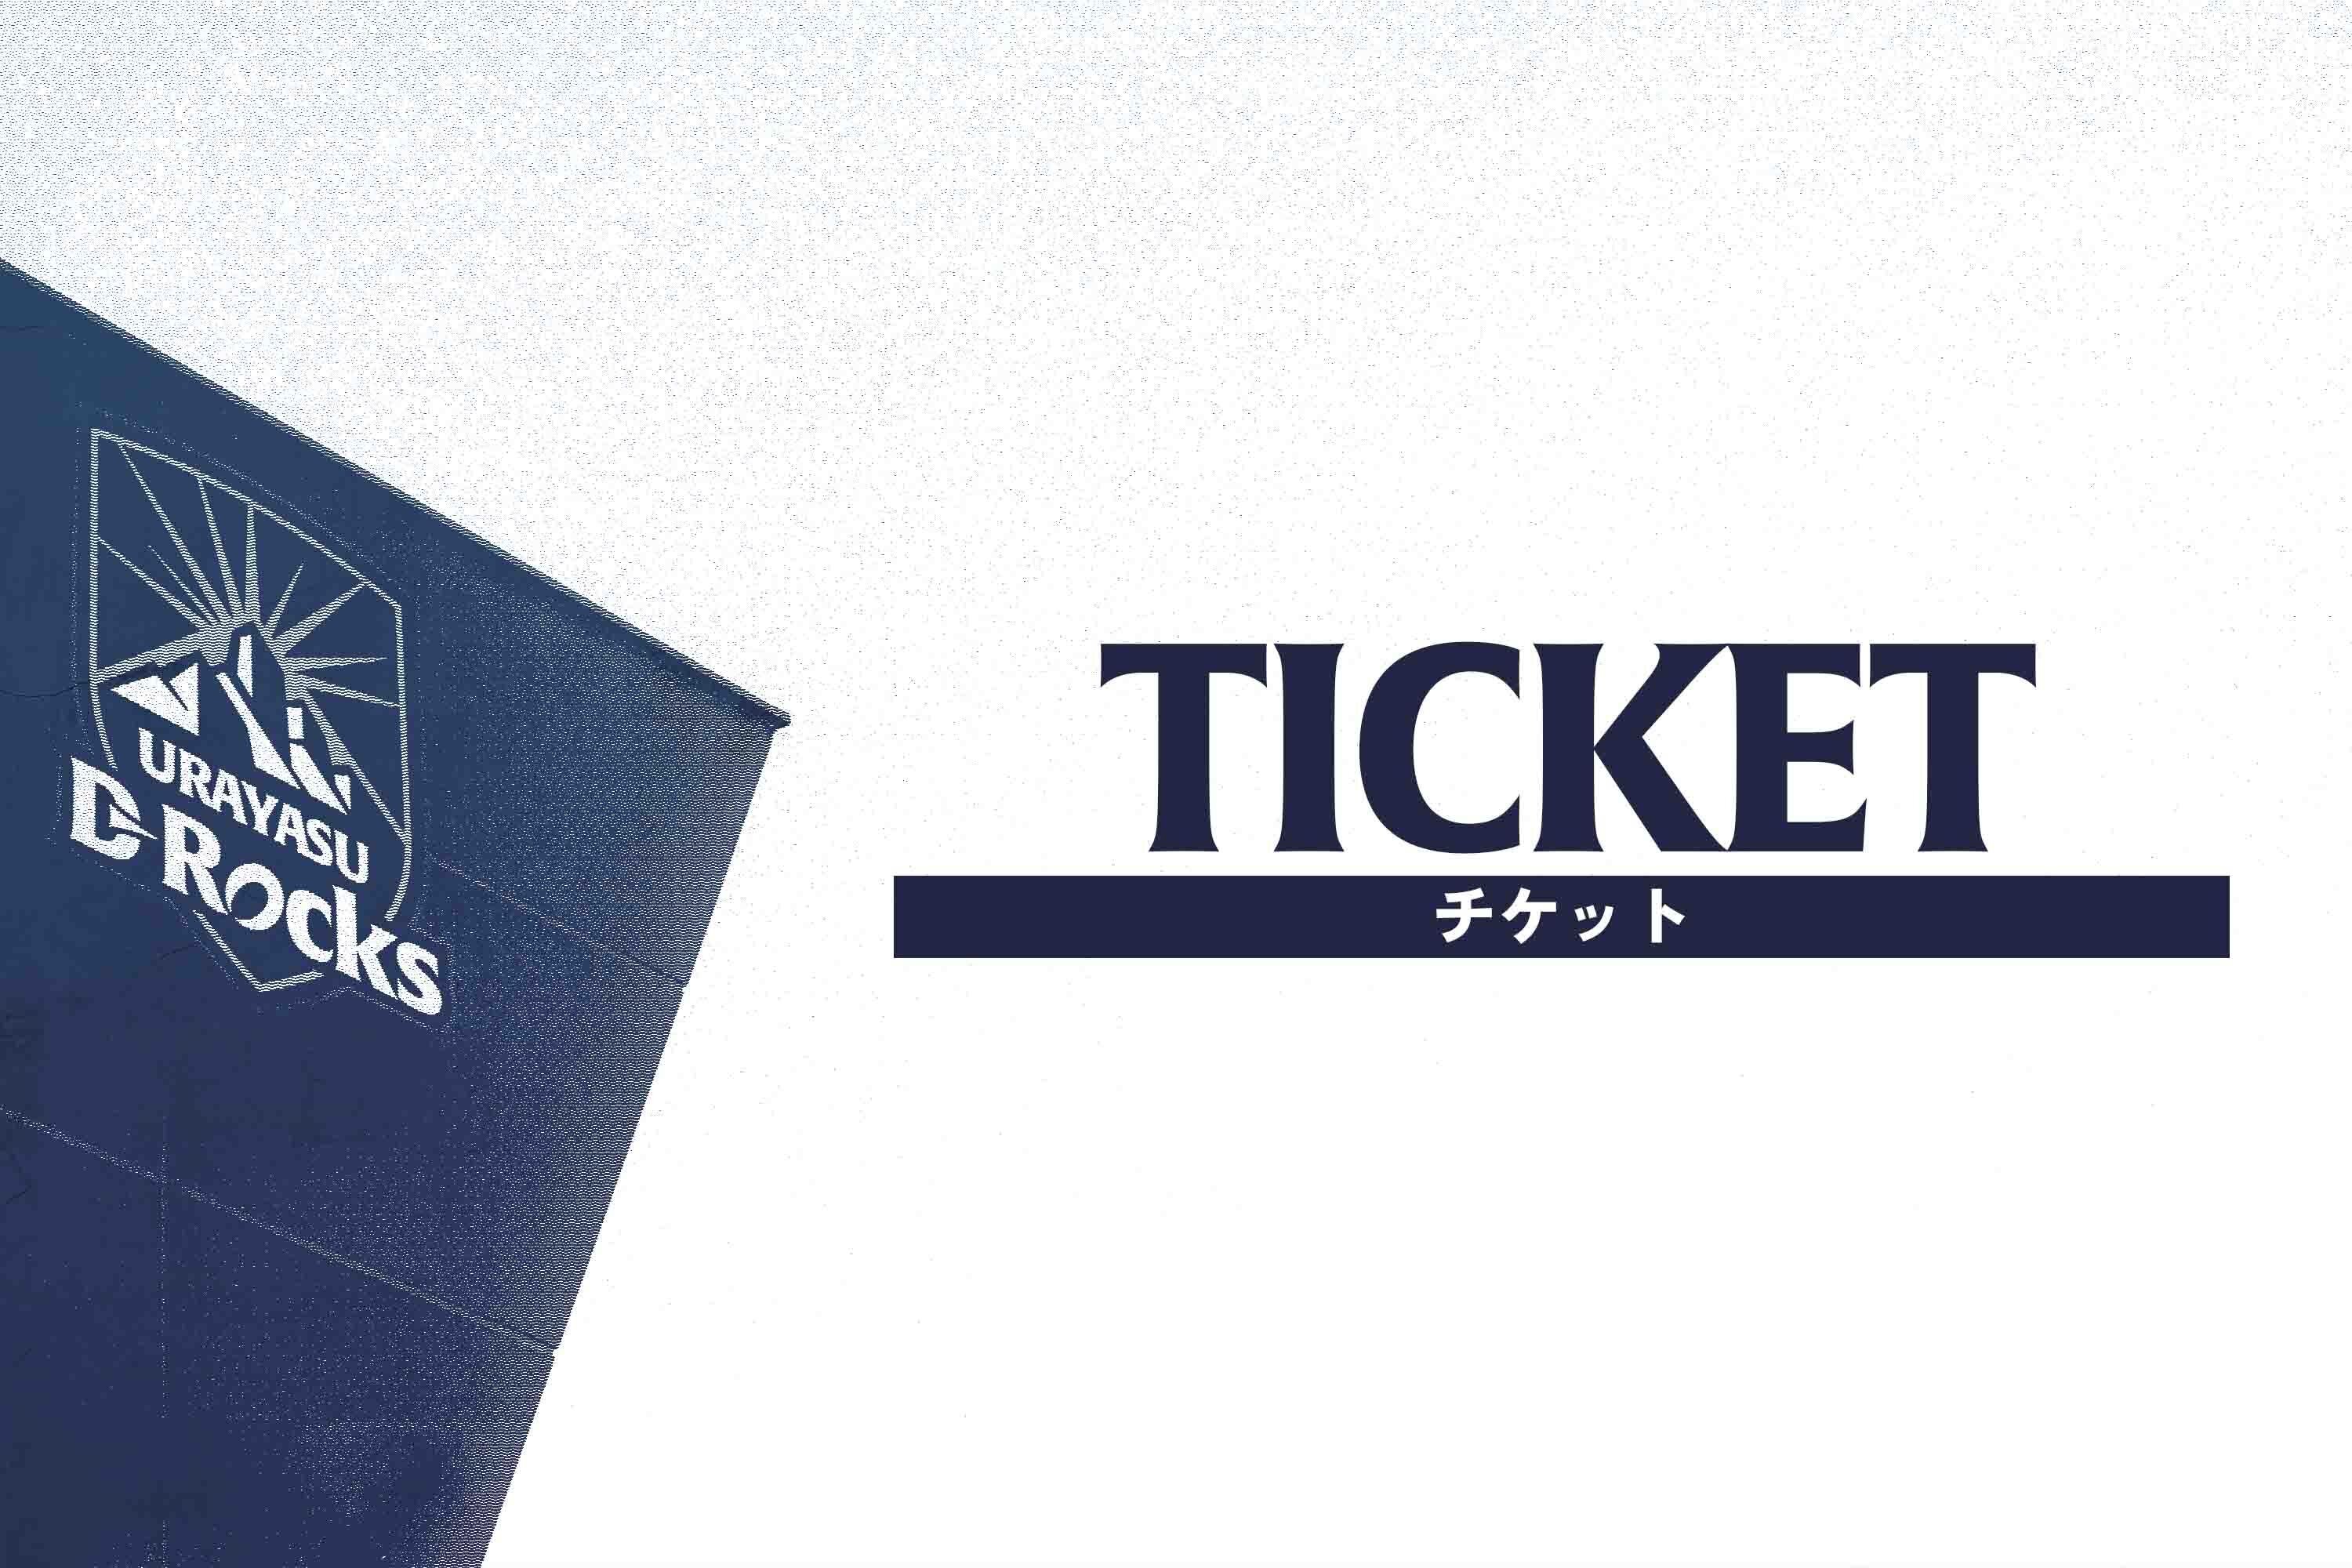 【チケット情報】NTT JAPAN RUGBY LEAGUE ONE 2023-24 D1/D2 入替戦 チケット販売スケジュール決定のお知らせ